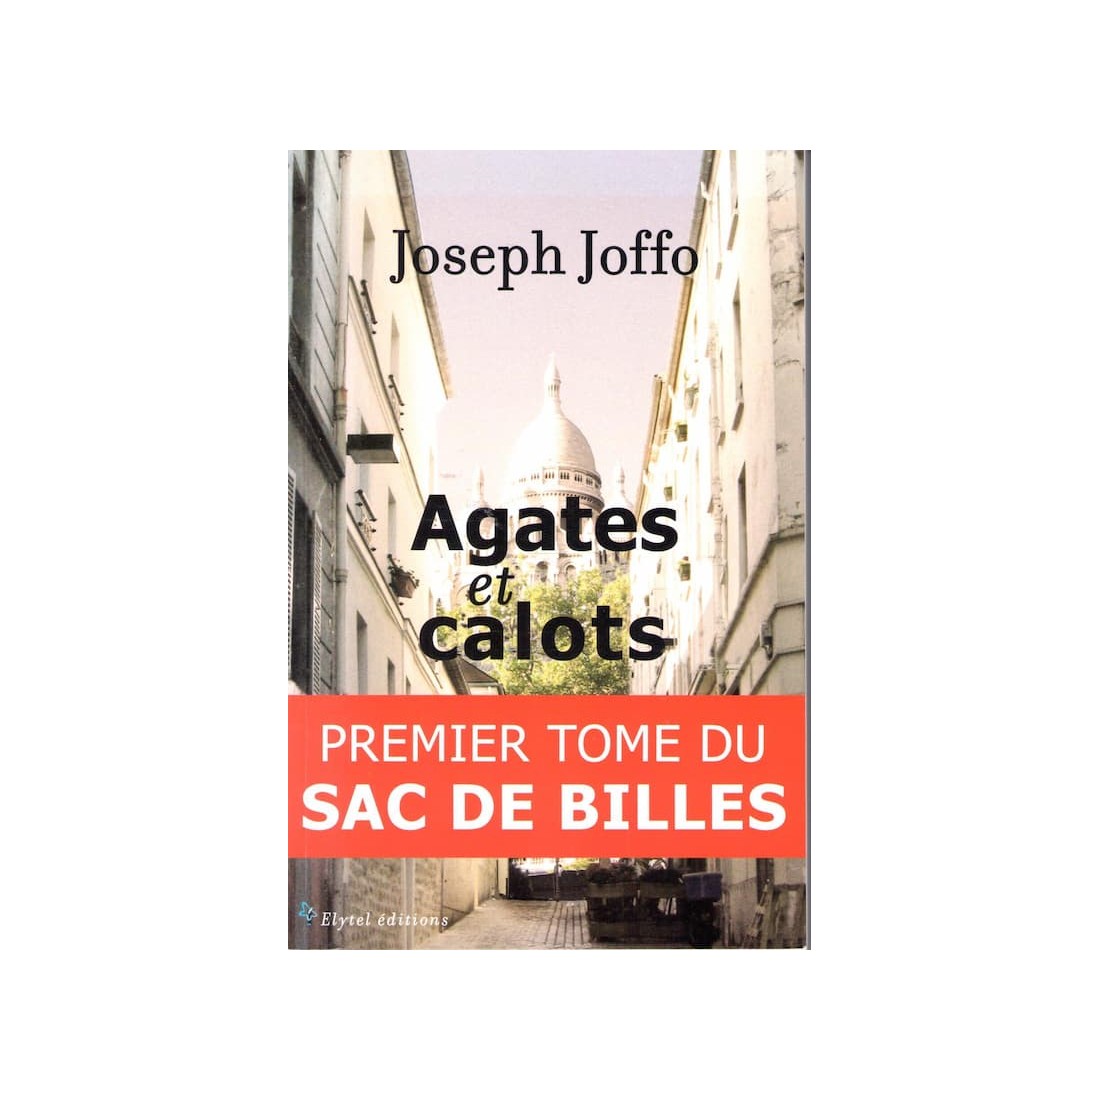 Agates et calots - Premier tome du sac de billes - Roman de Joseph Joffo - Ocazlivres.com